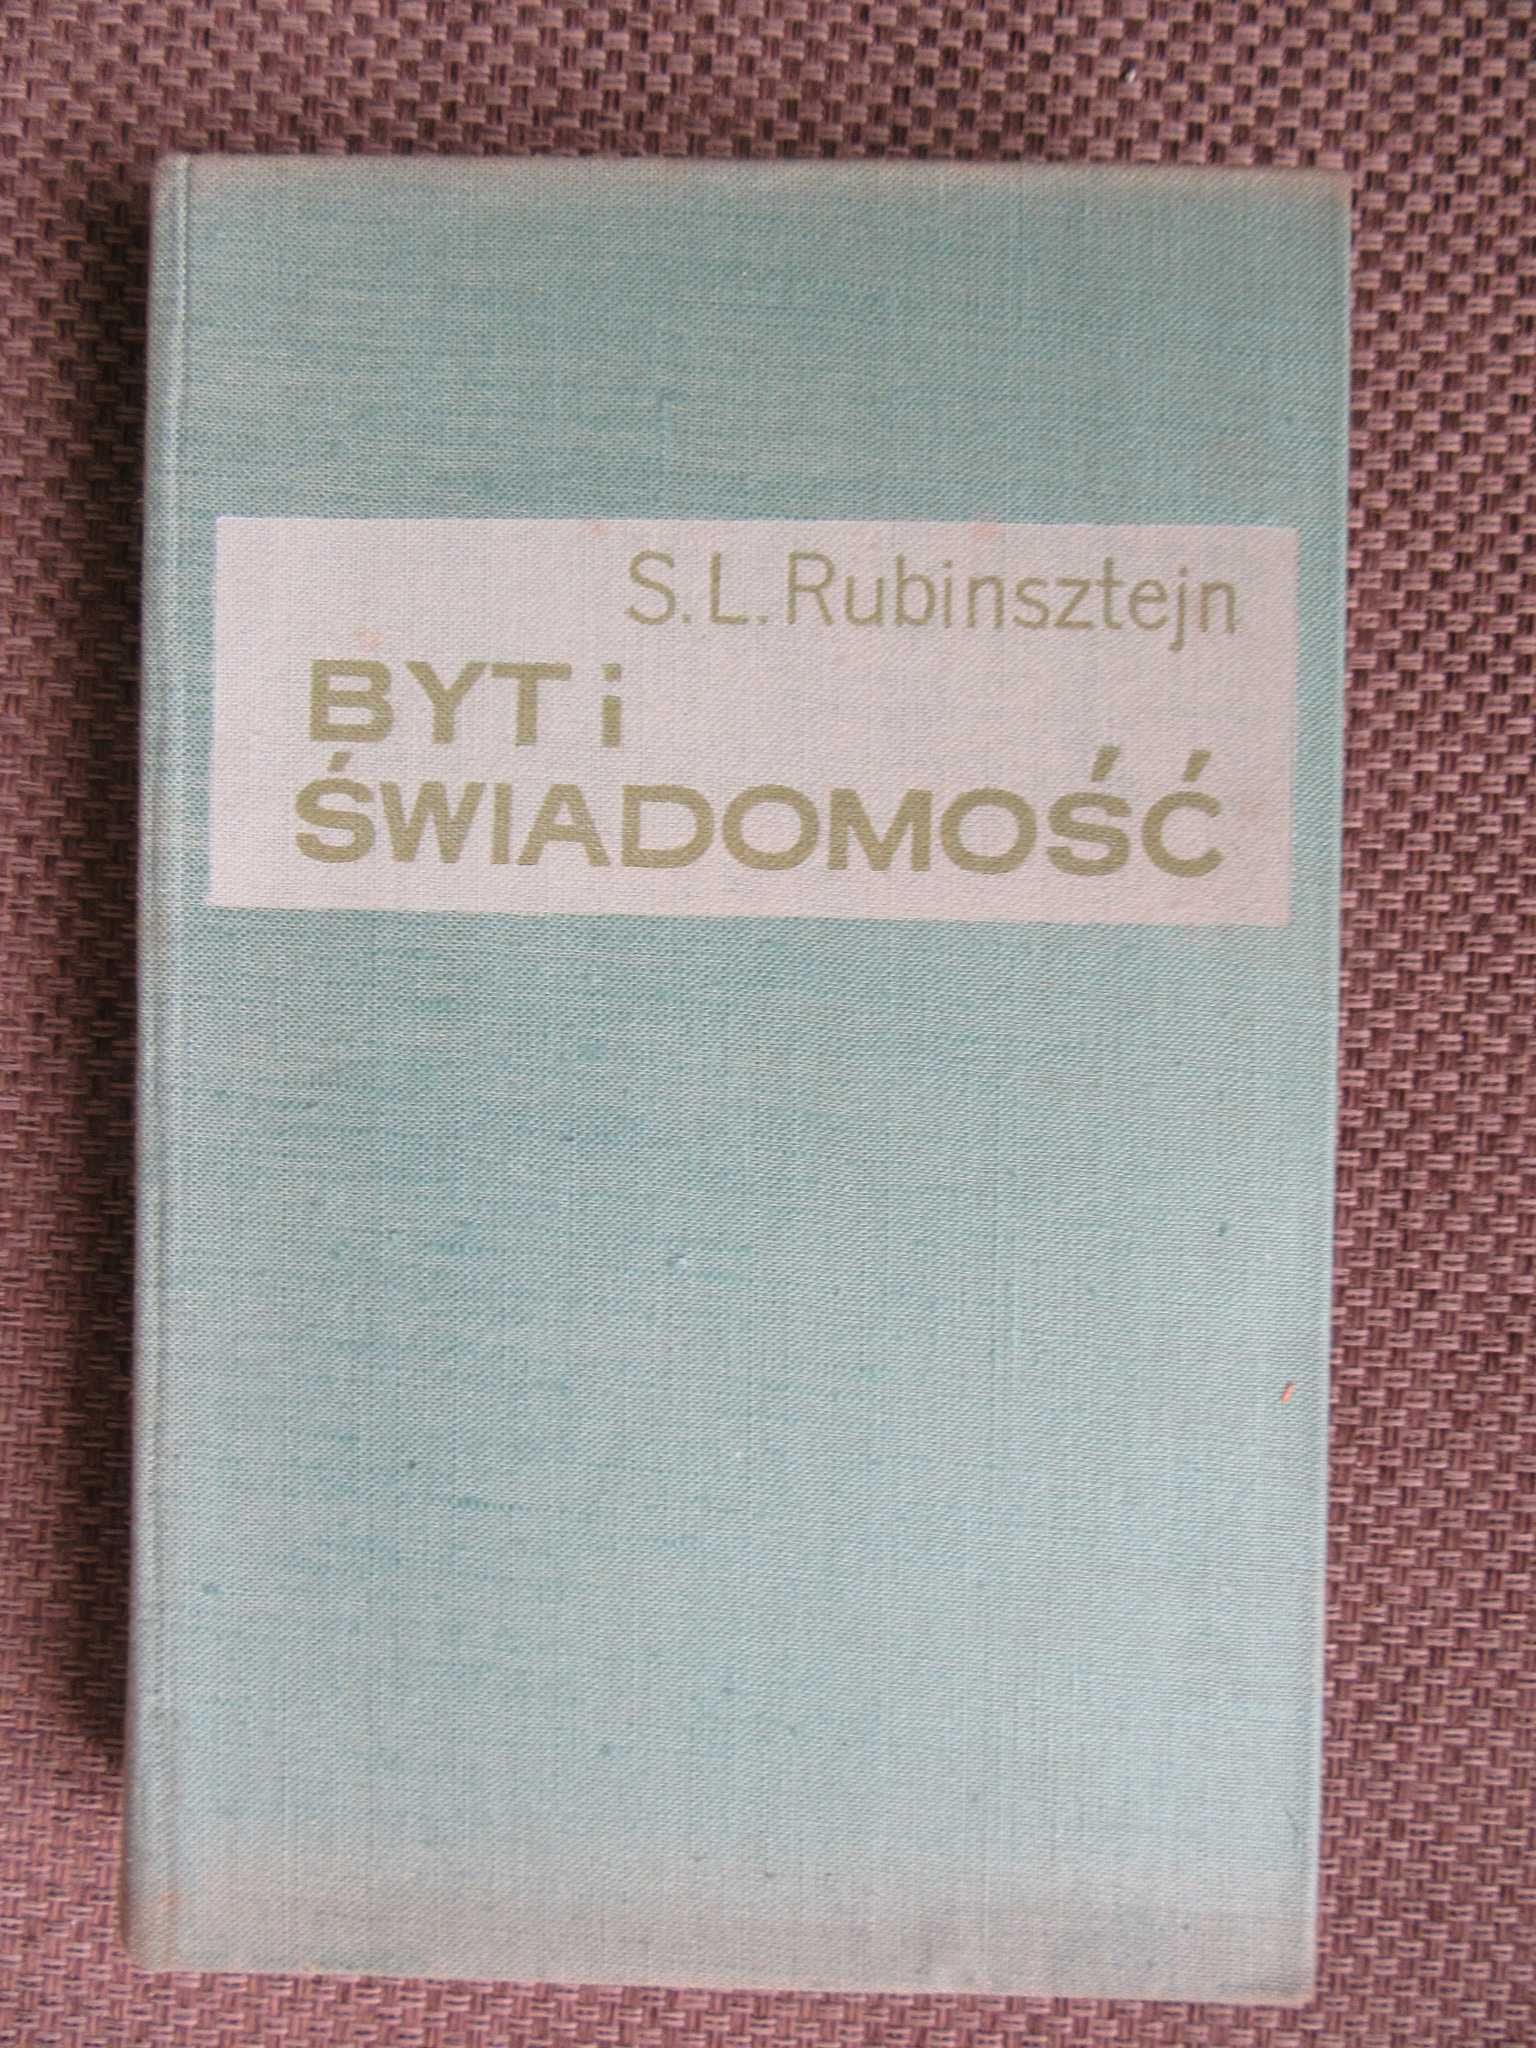 Byt i świadomość  S. L. Rubinsztejn  z 1961r